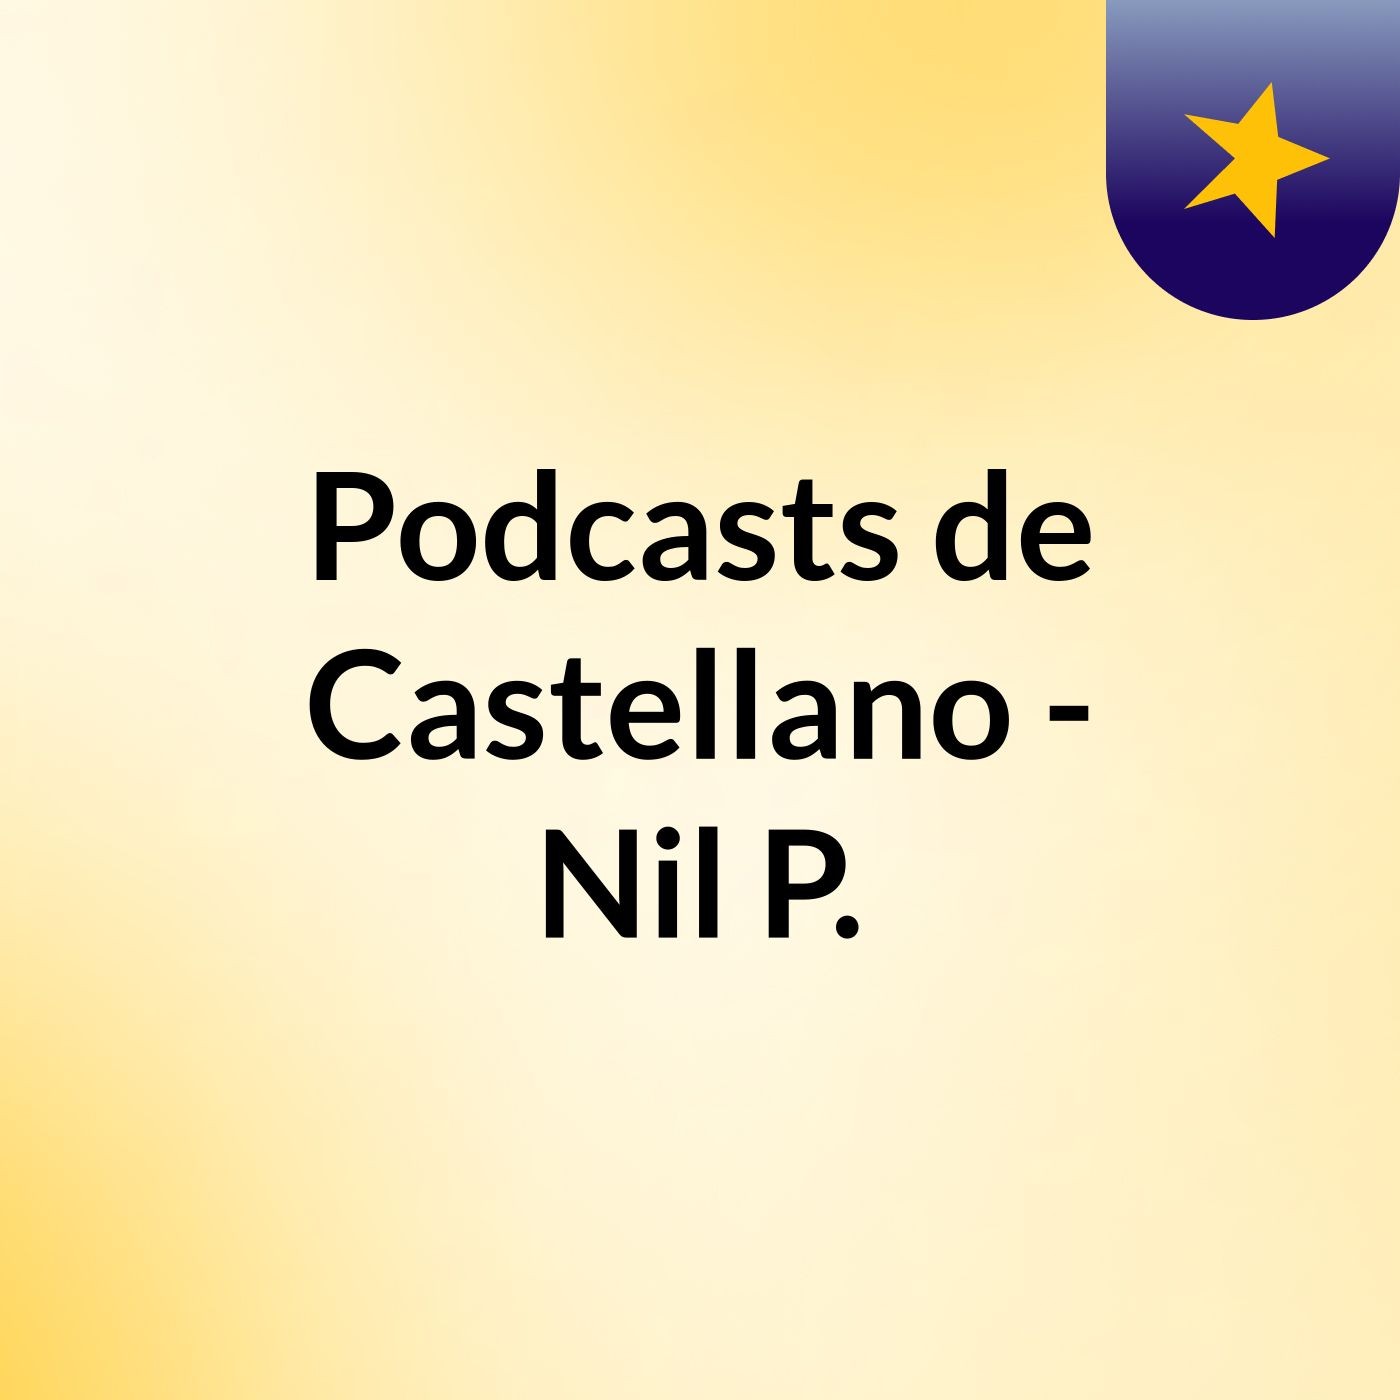 Podcasts de Castellano - Nil P.